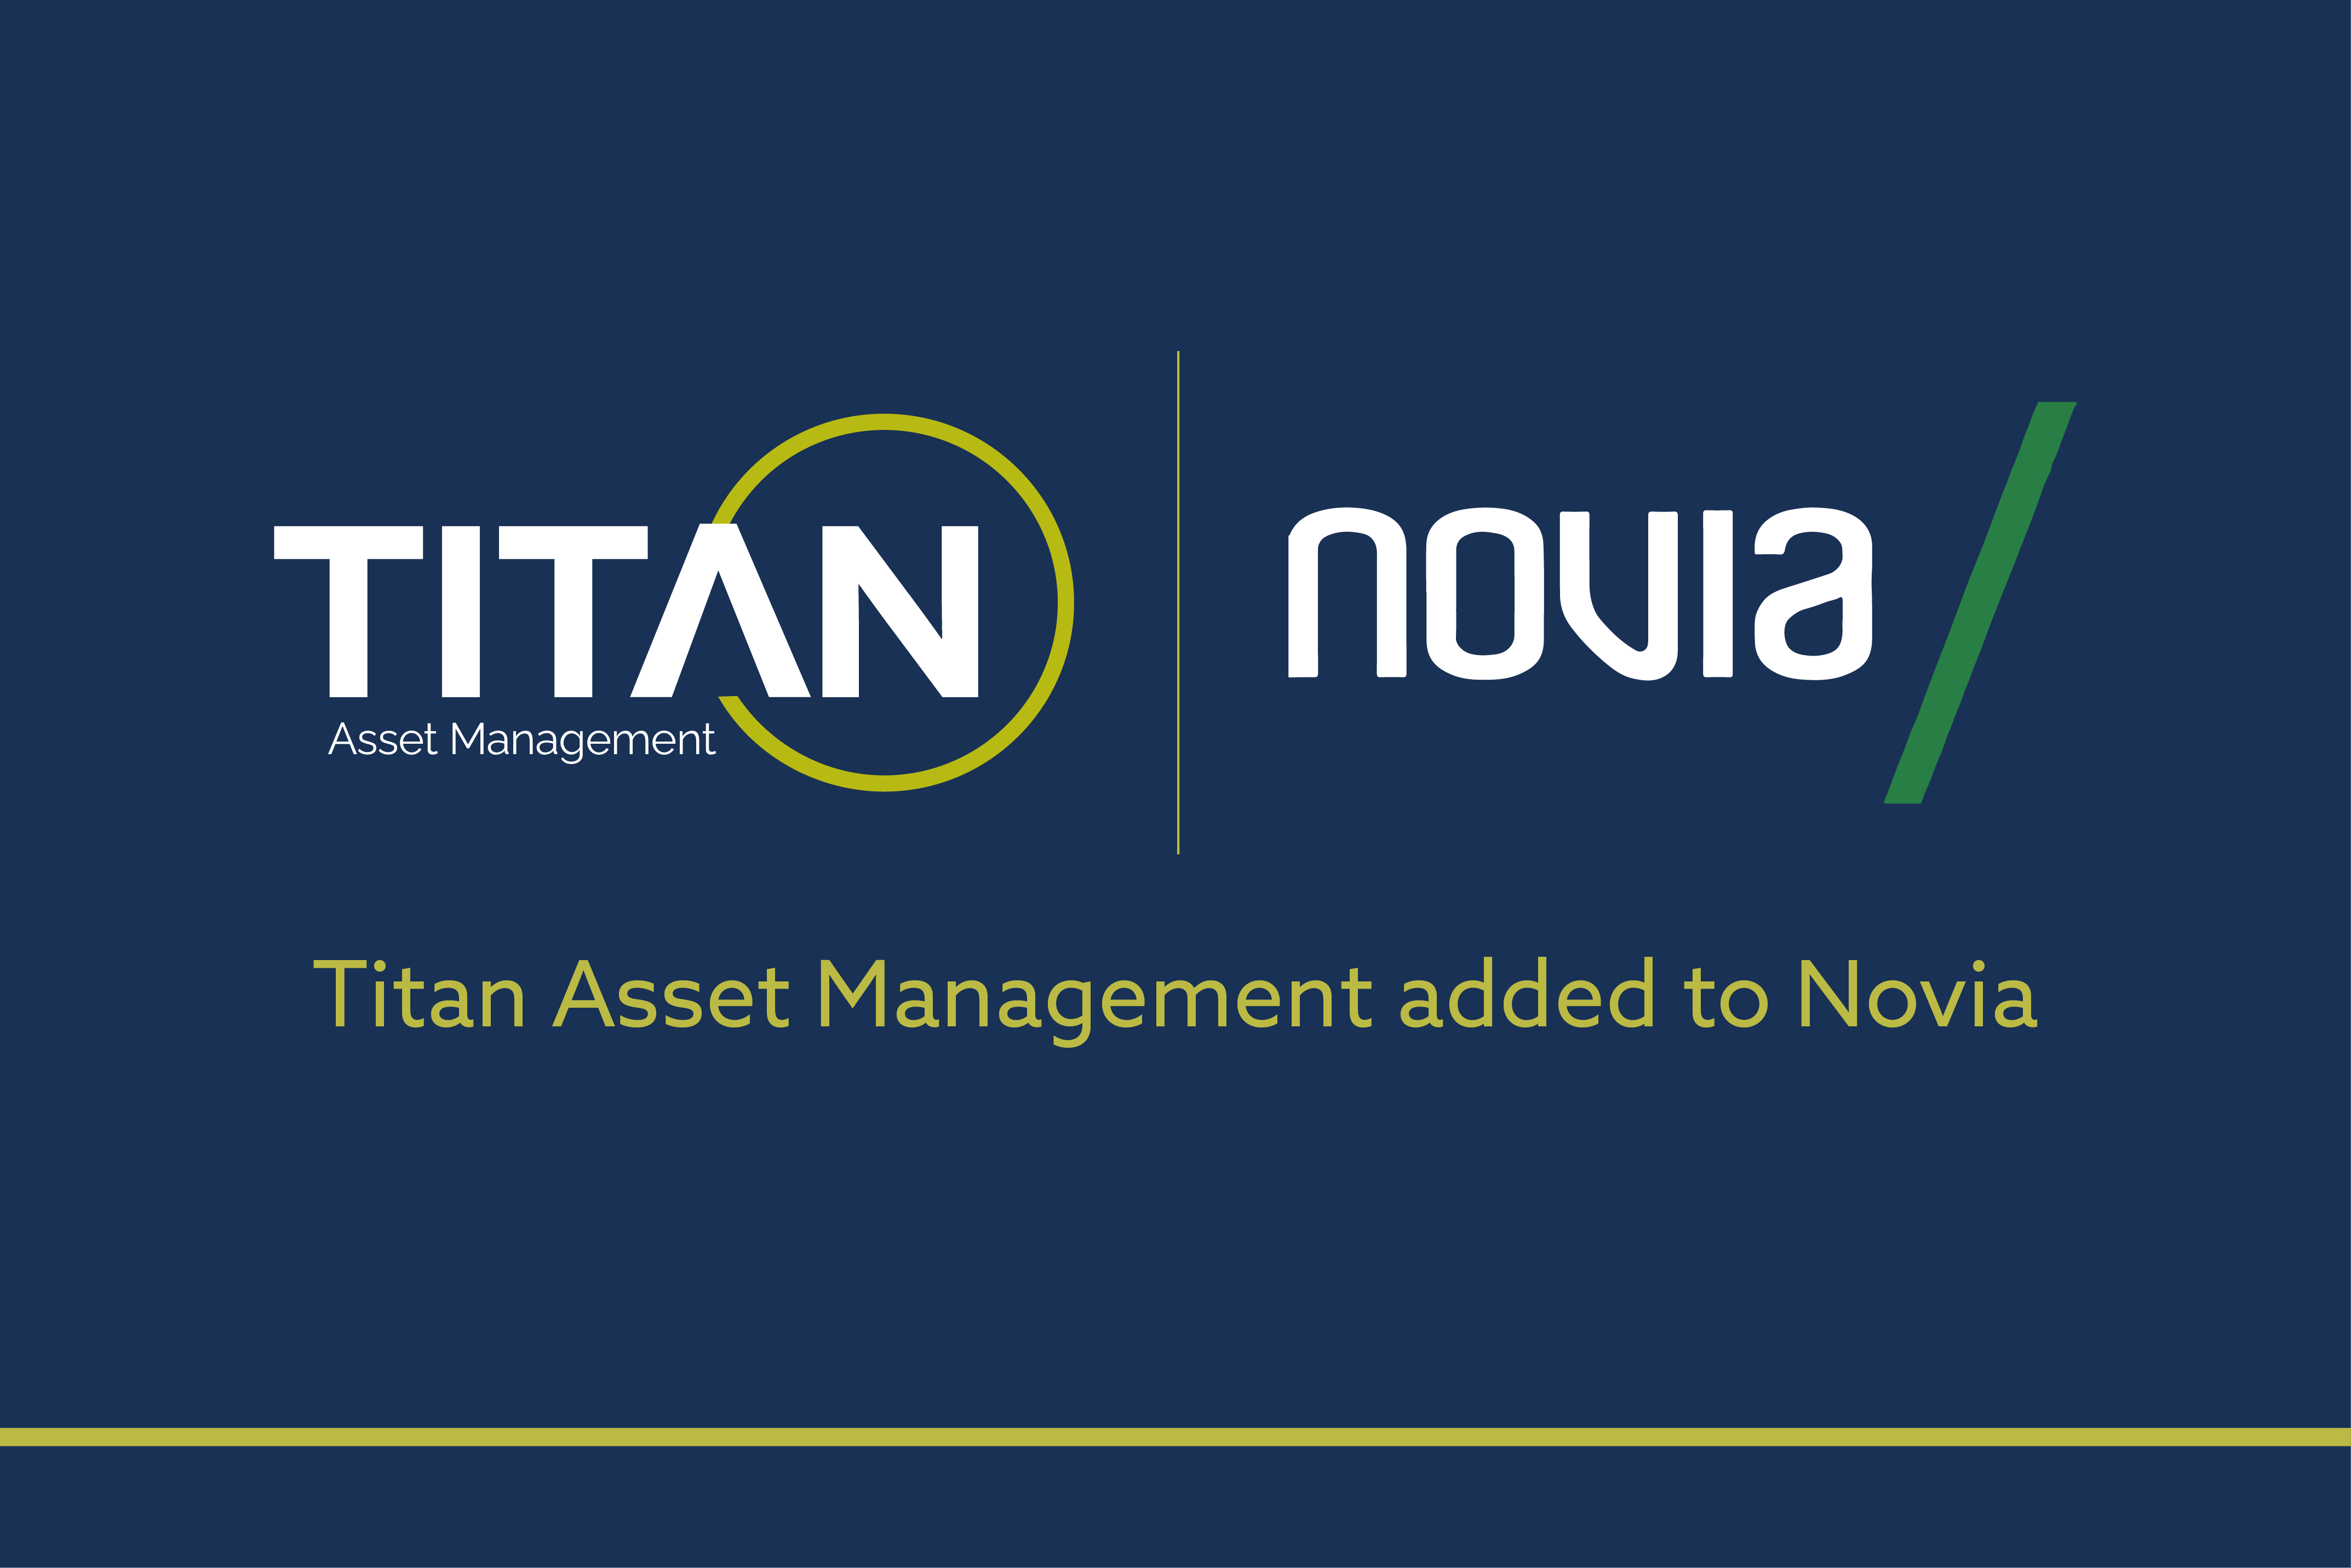 Titan Asset Management added to the Novia Global Platform